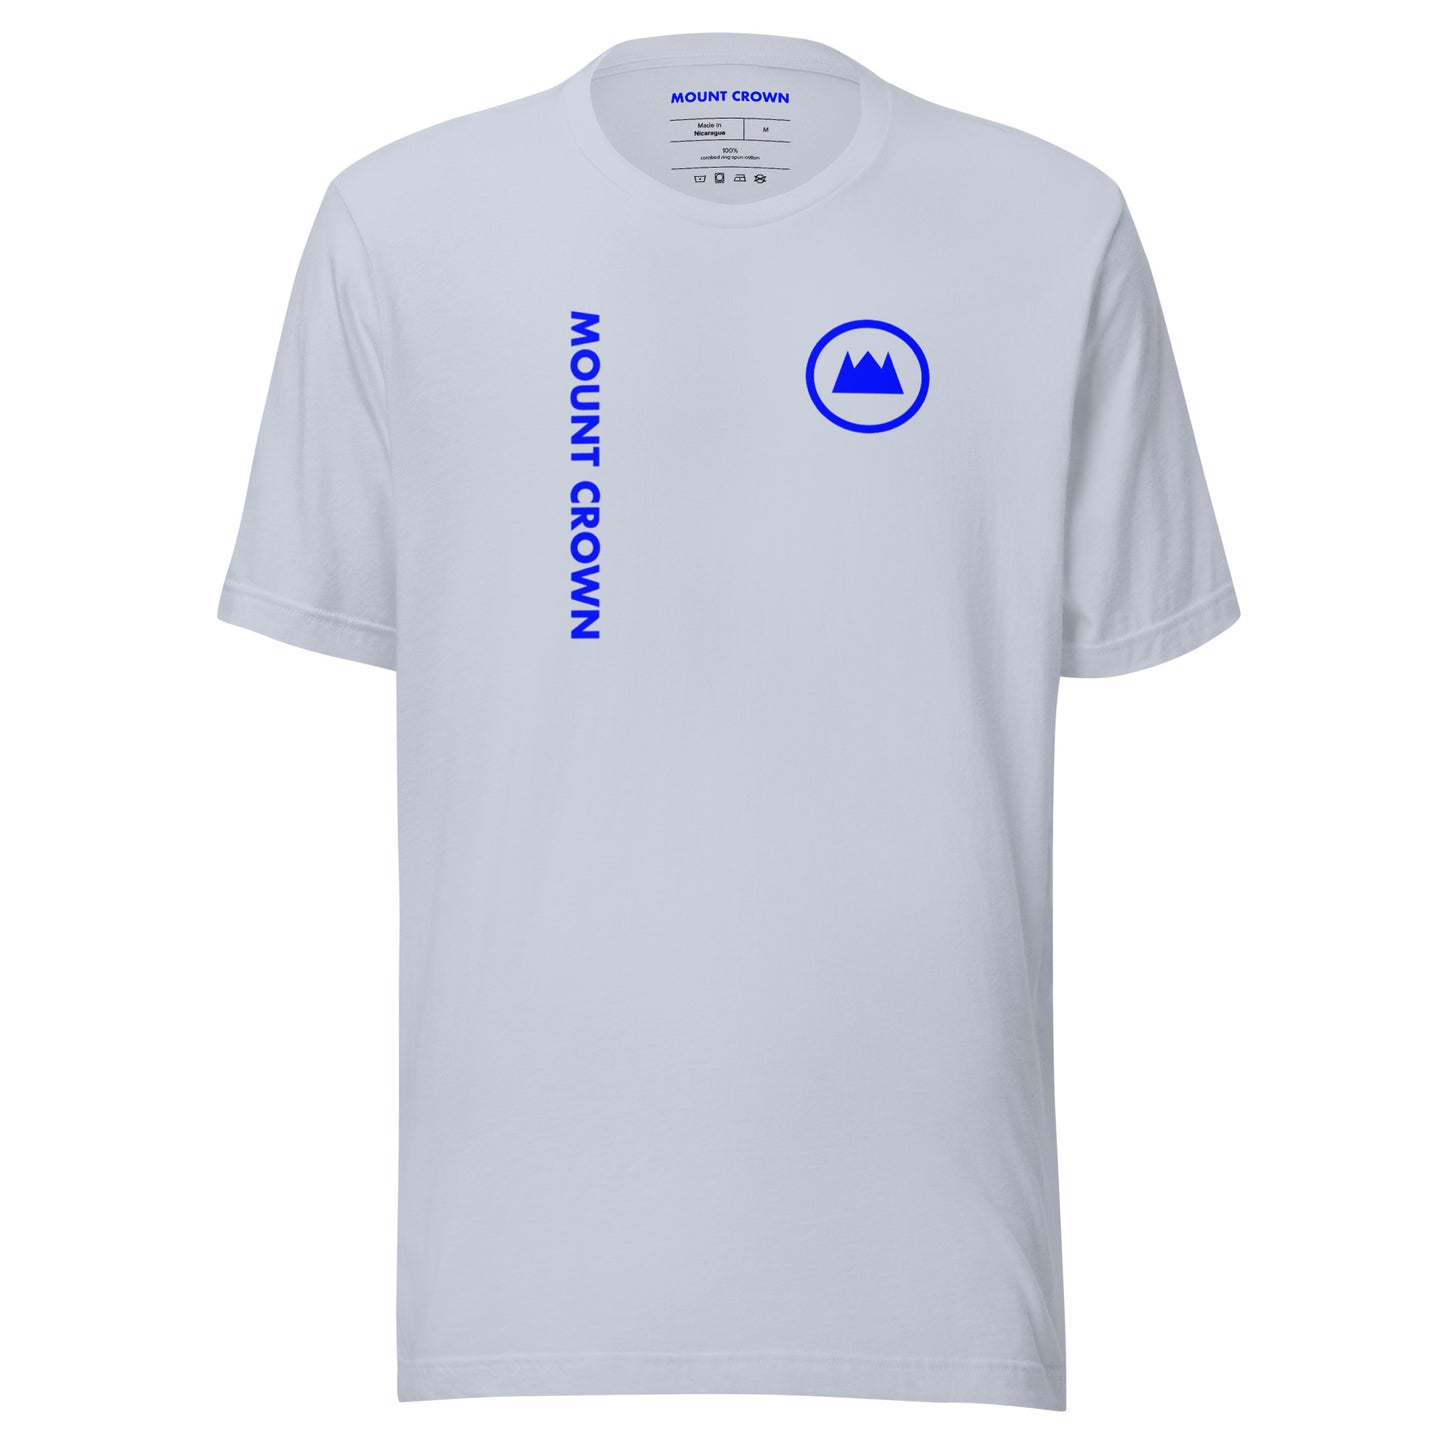 MOUNT CROWN (Blu)3 T-shirt